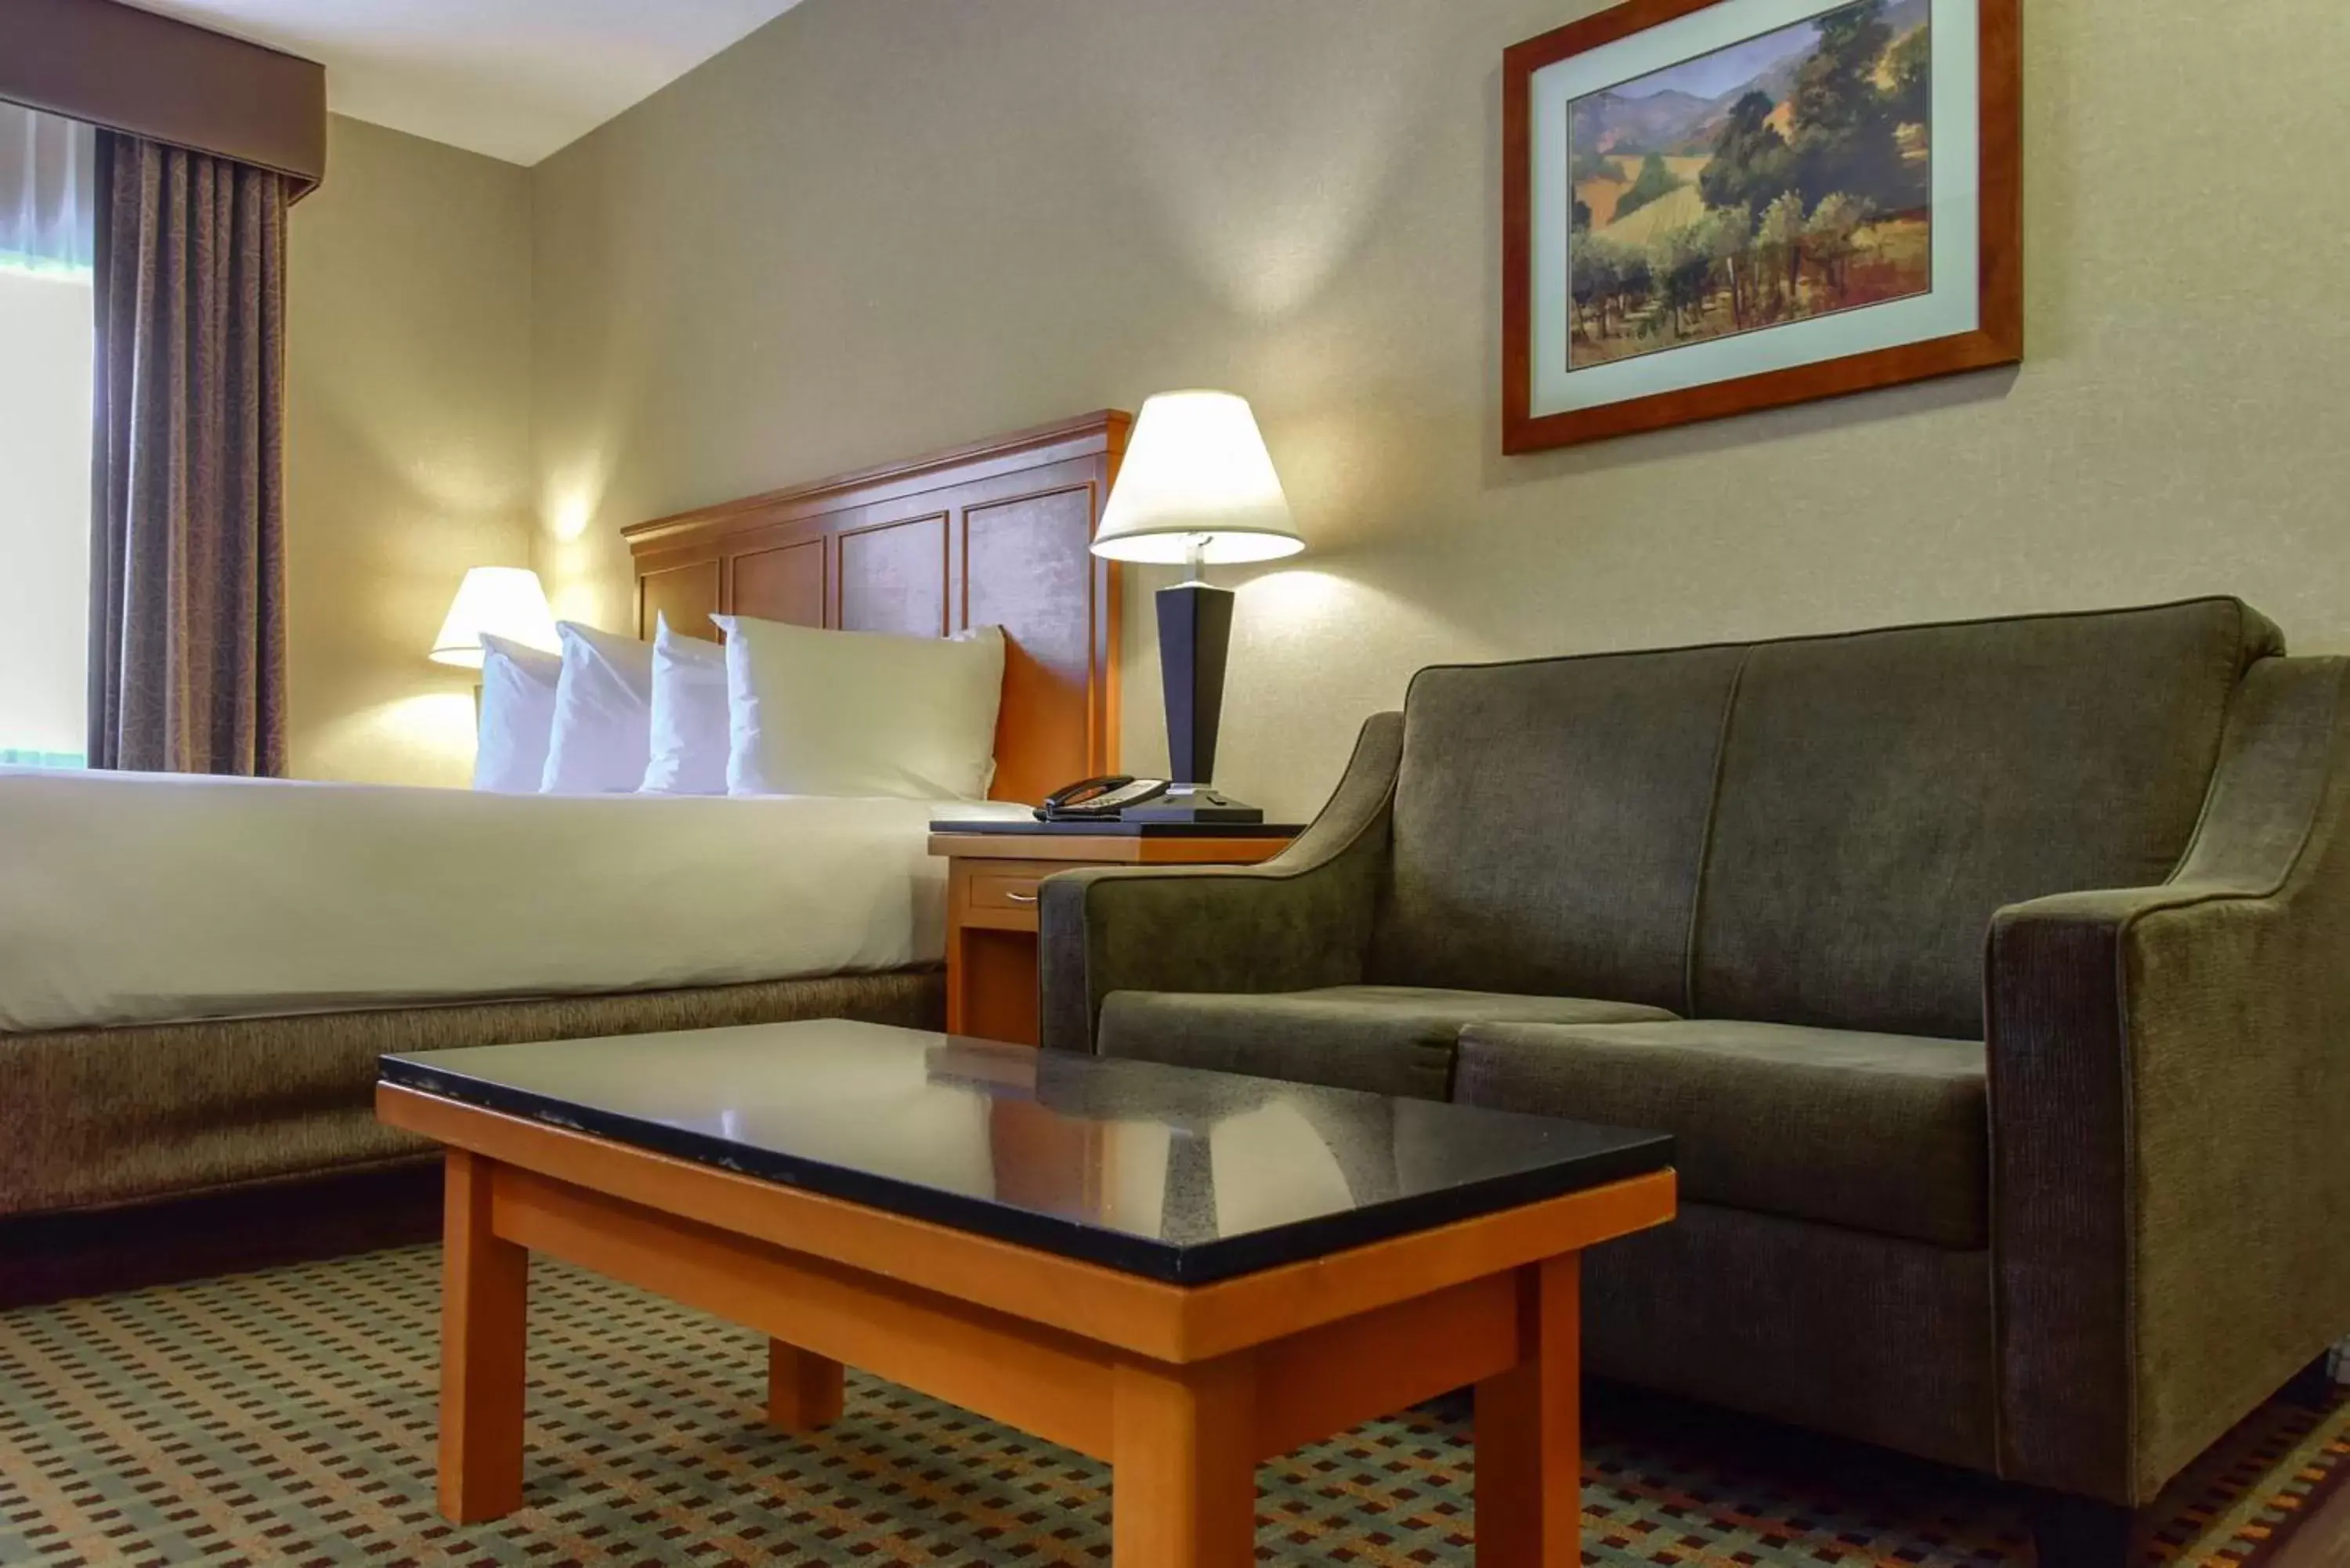 Bedroom, Seating Area in Best Western Plus Osoyoos Hotel & Suites